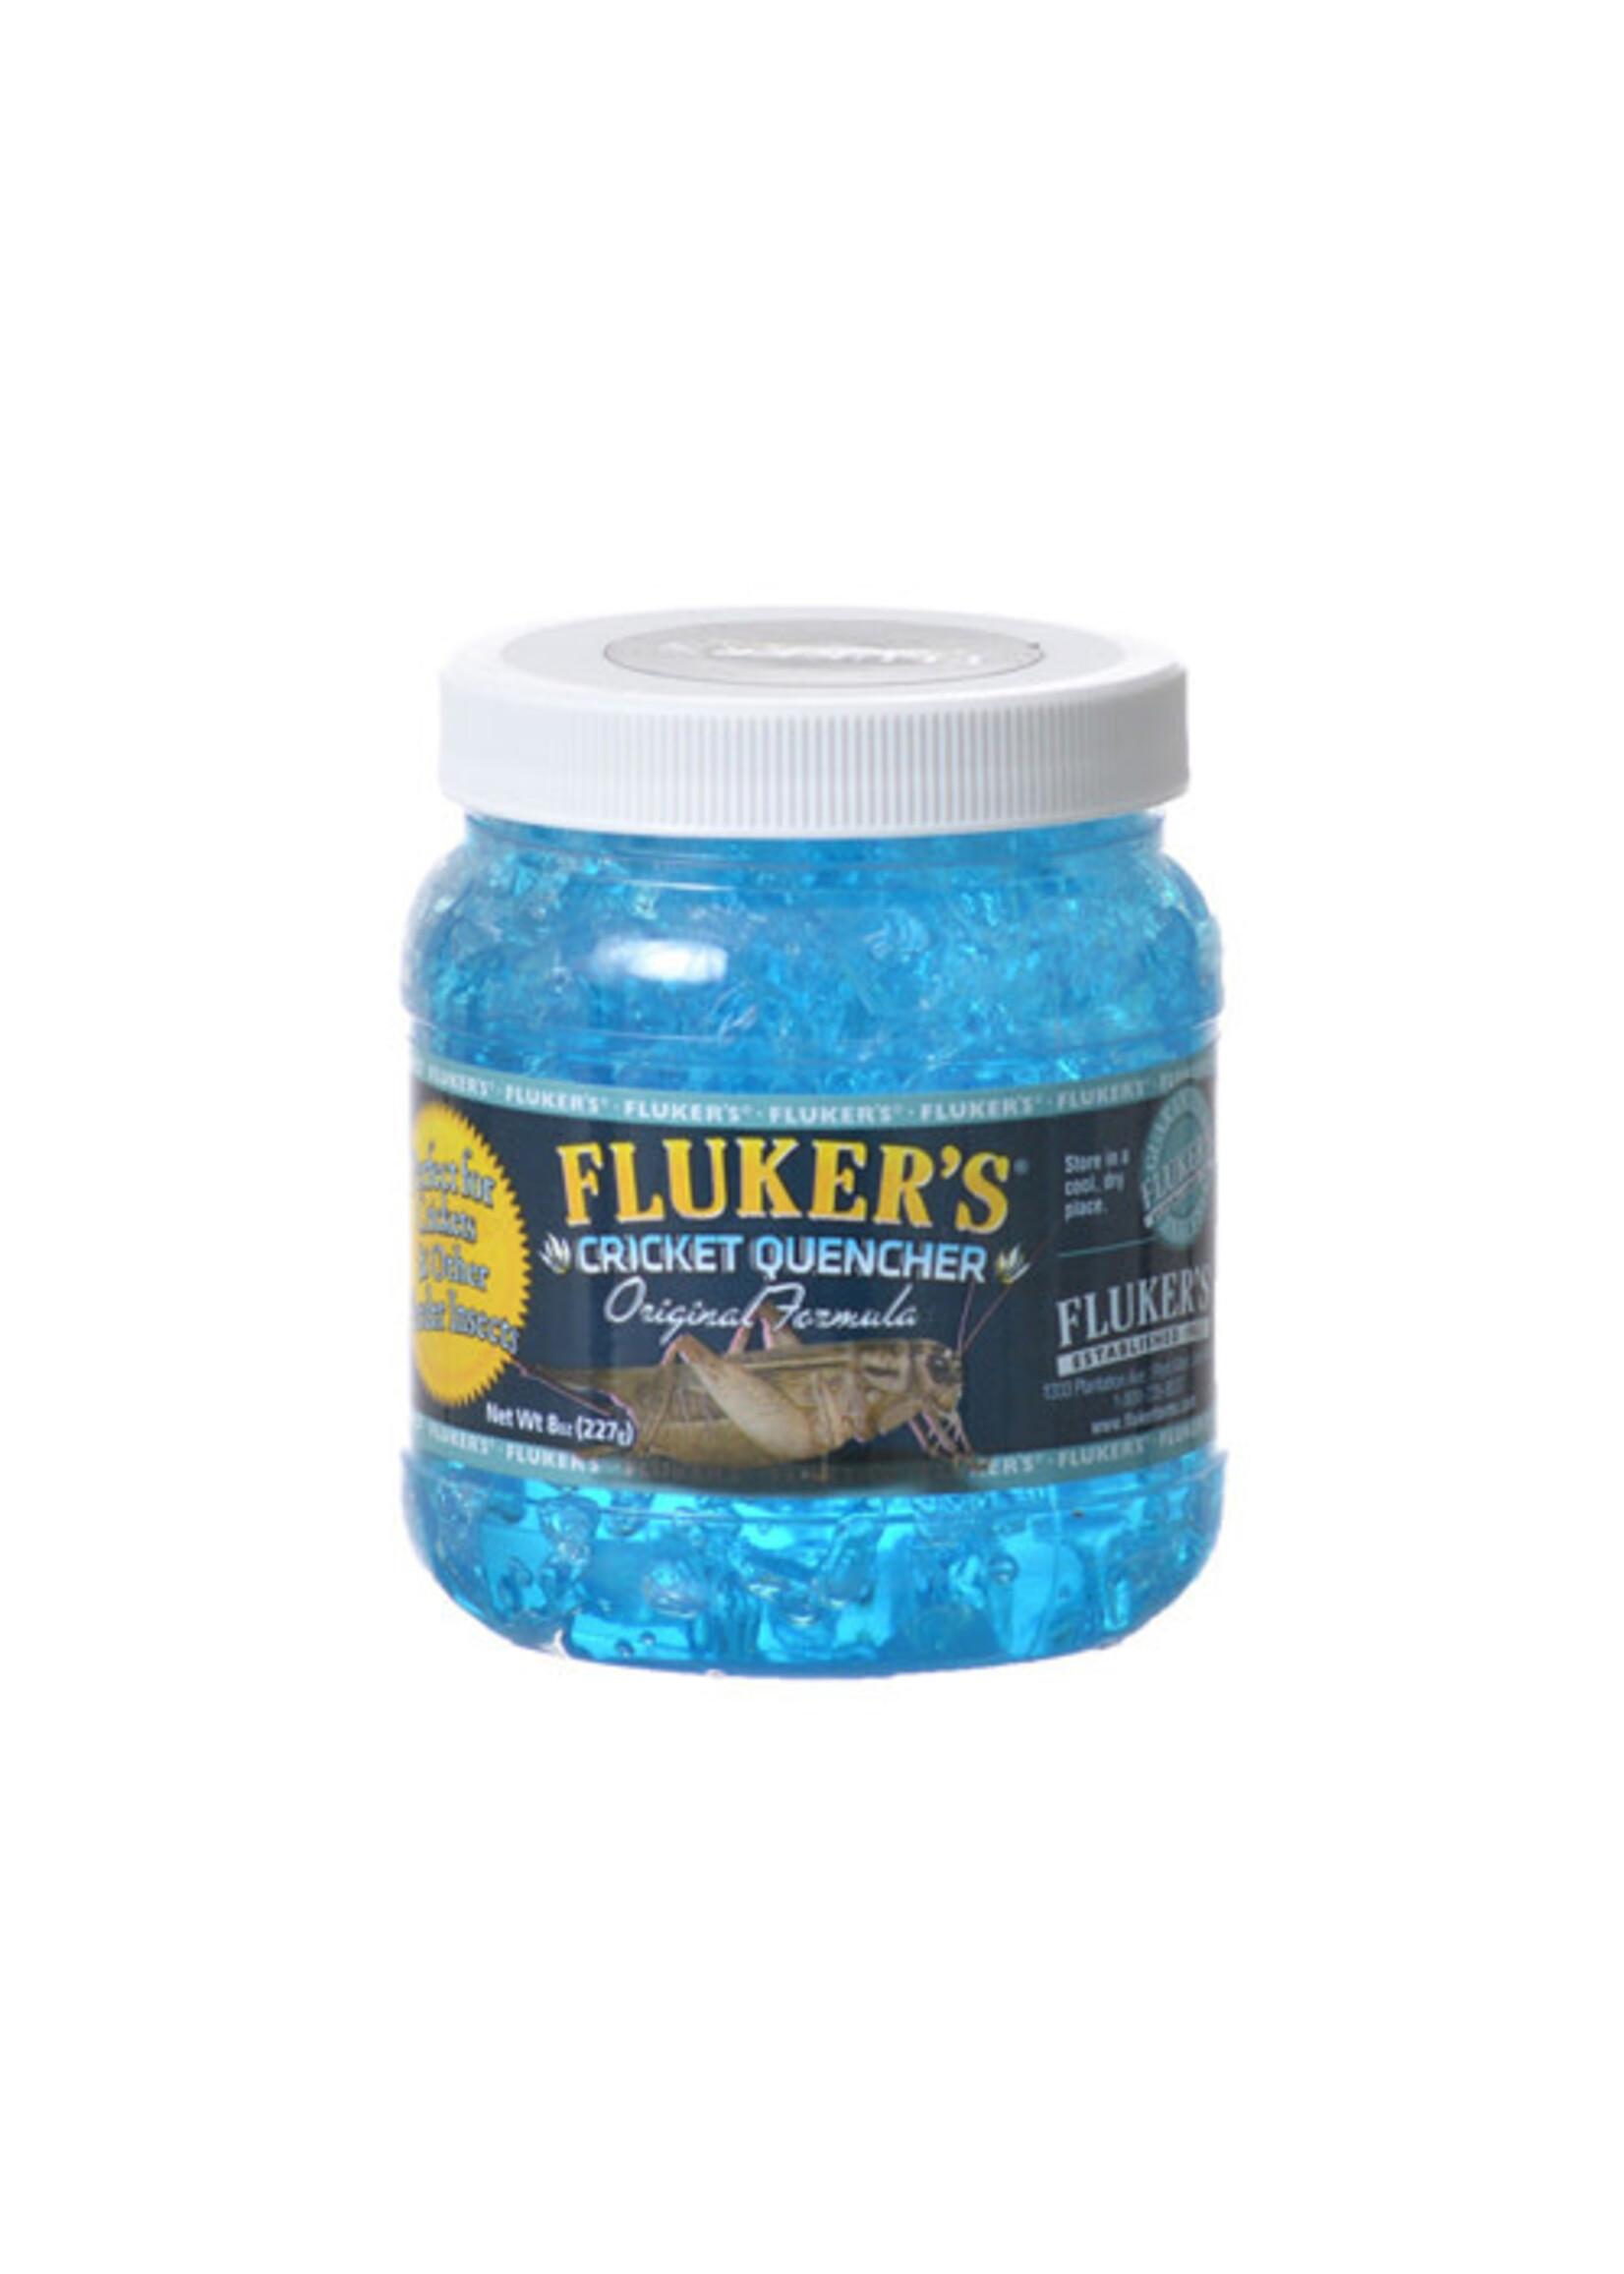 Flukers Fluker's Cricket Quencher Original